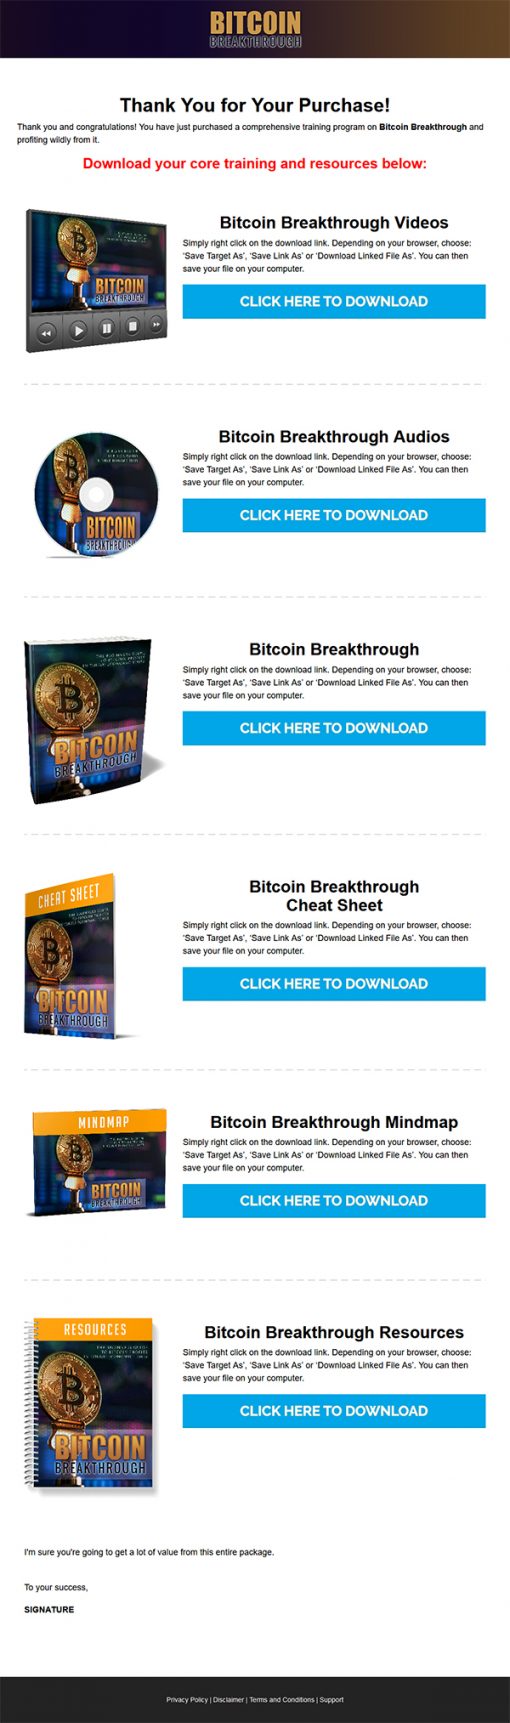 Bitcoin Breakthrough Ebook and Videos MRR